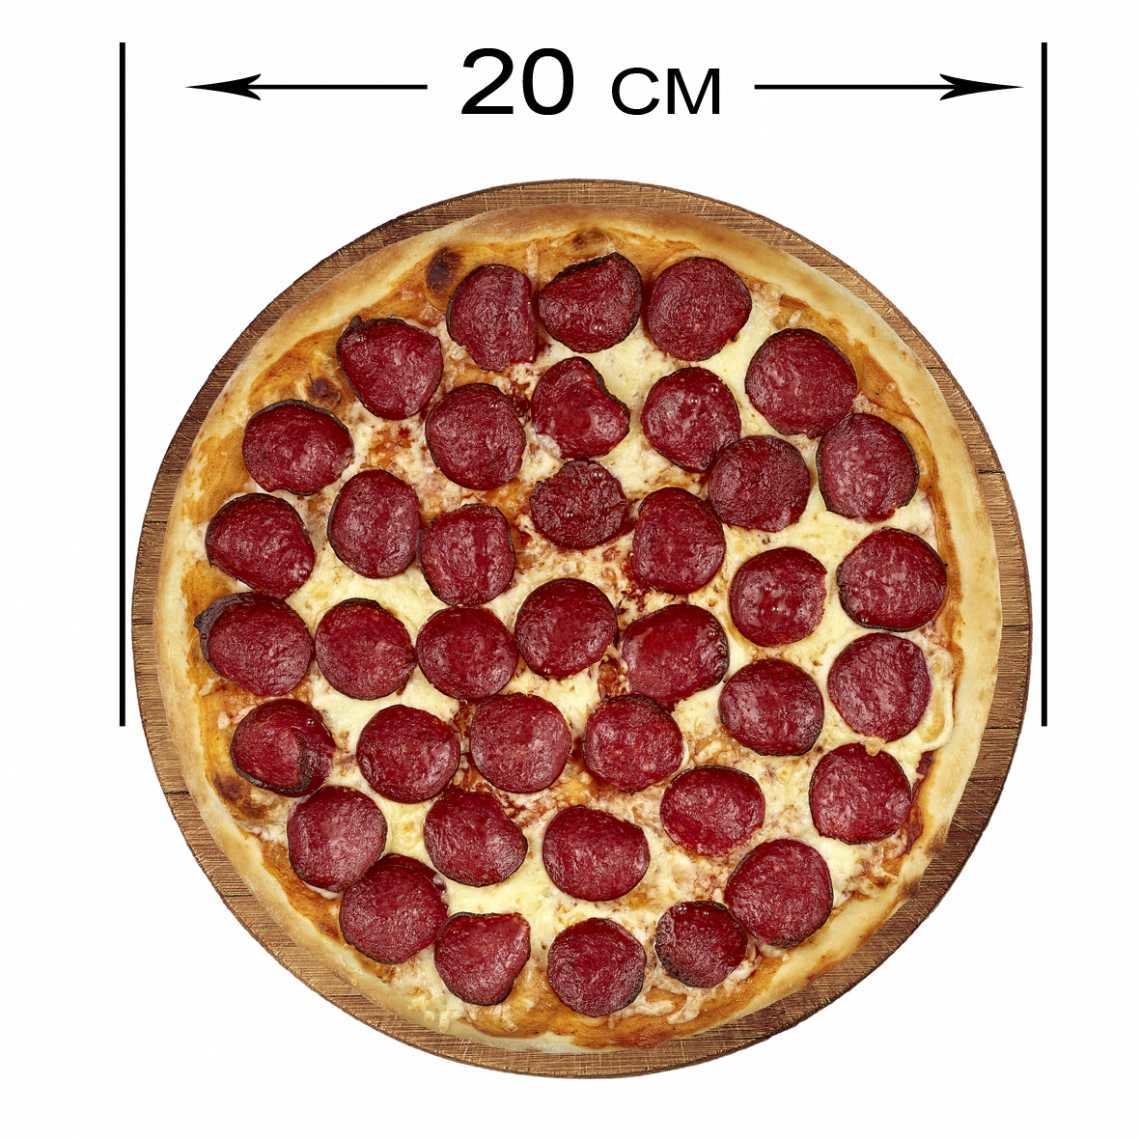 сколько стоит большая пицца пепперони фото 52